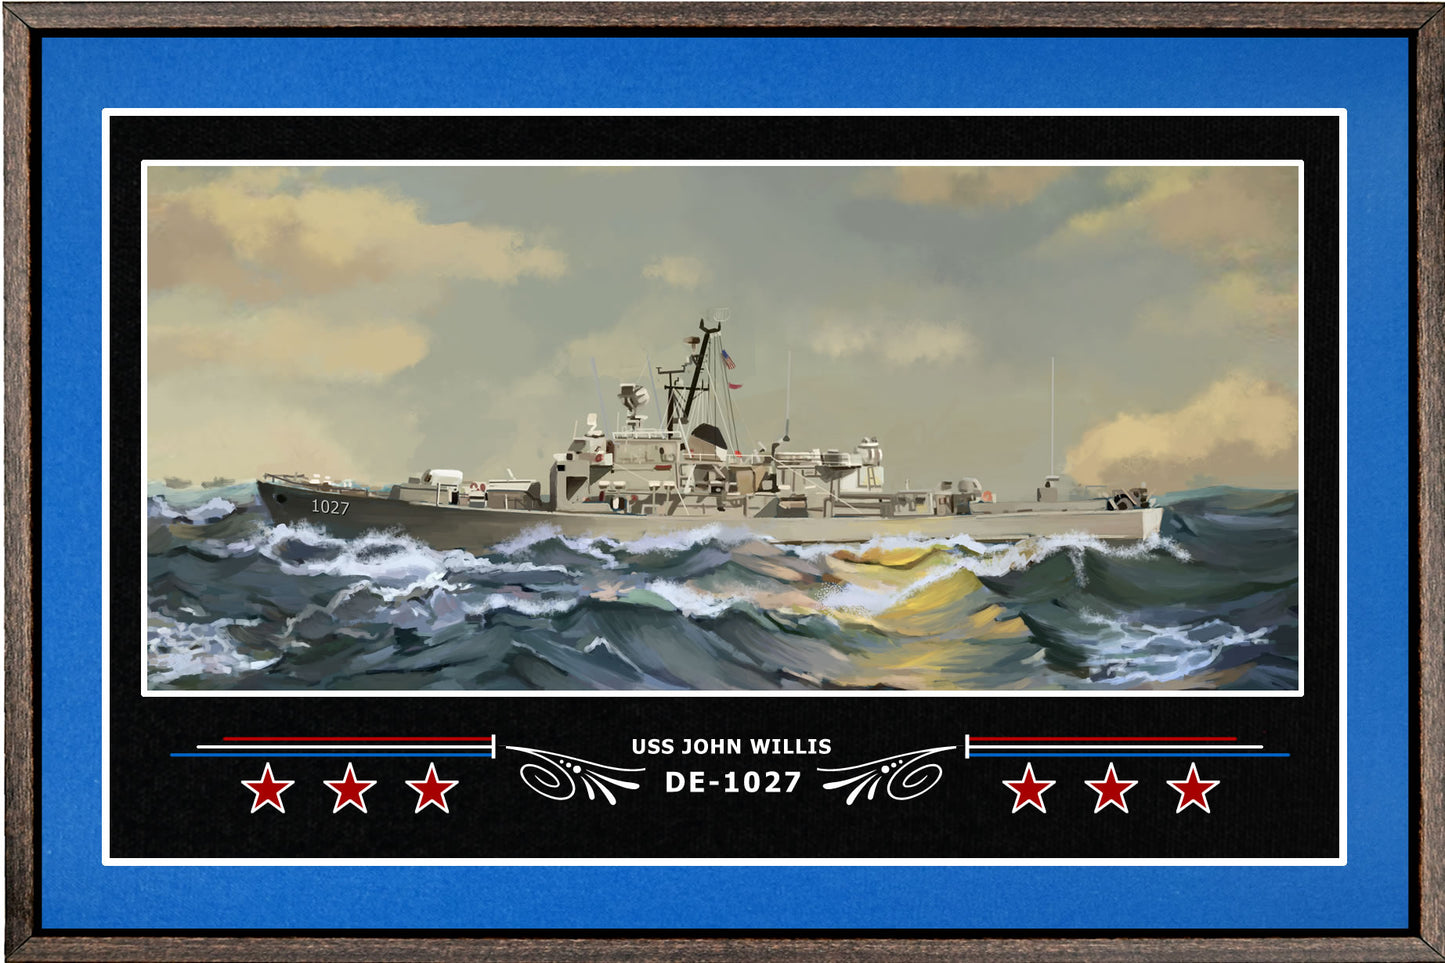 USS JOHN WILLIS DE 1027 BOX FRAMED CANVAS ART BLUE